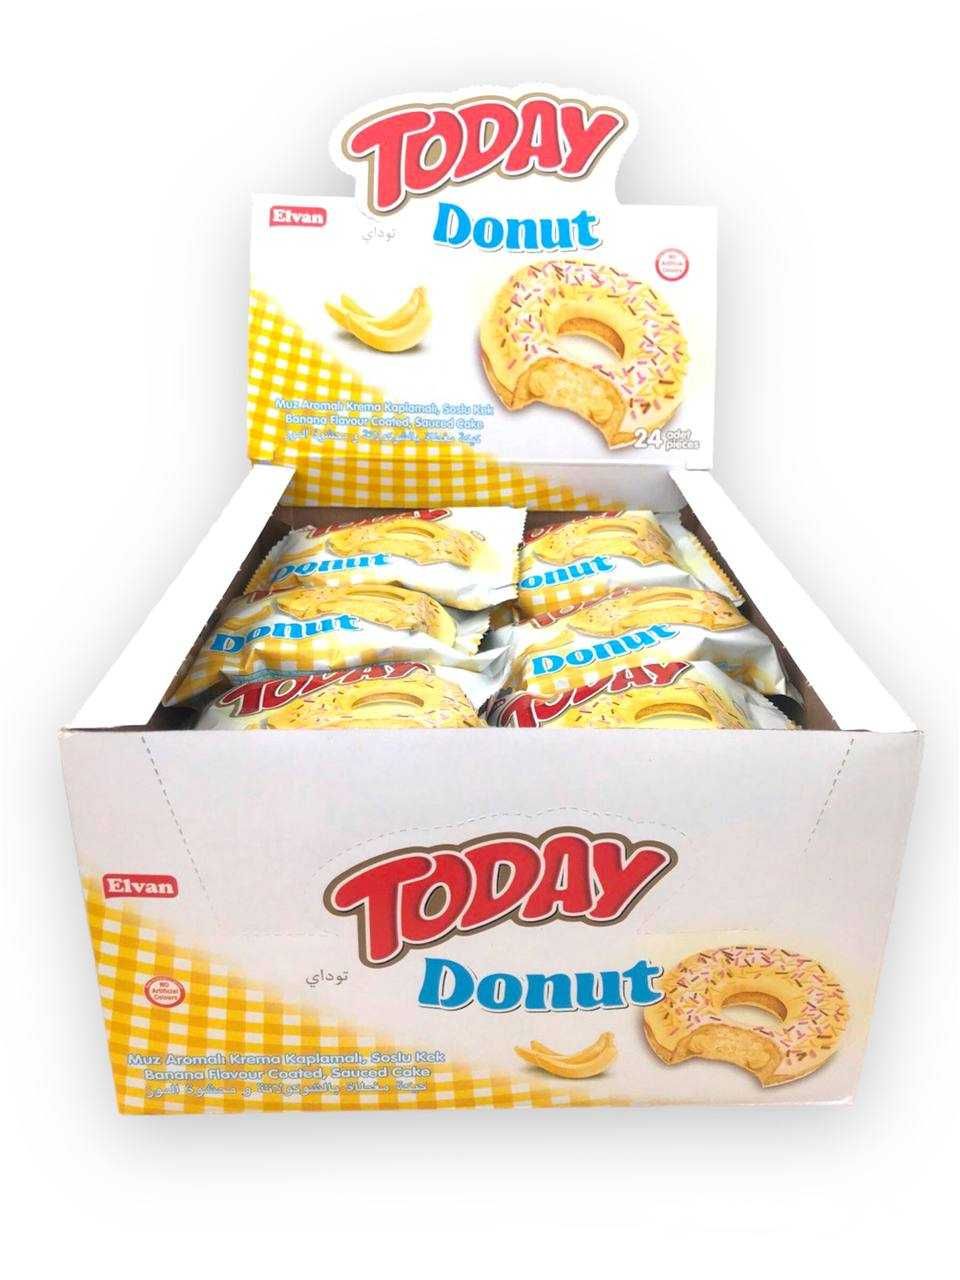 Пончик Today donut TM Elvan, Турция 24шт/уп